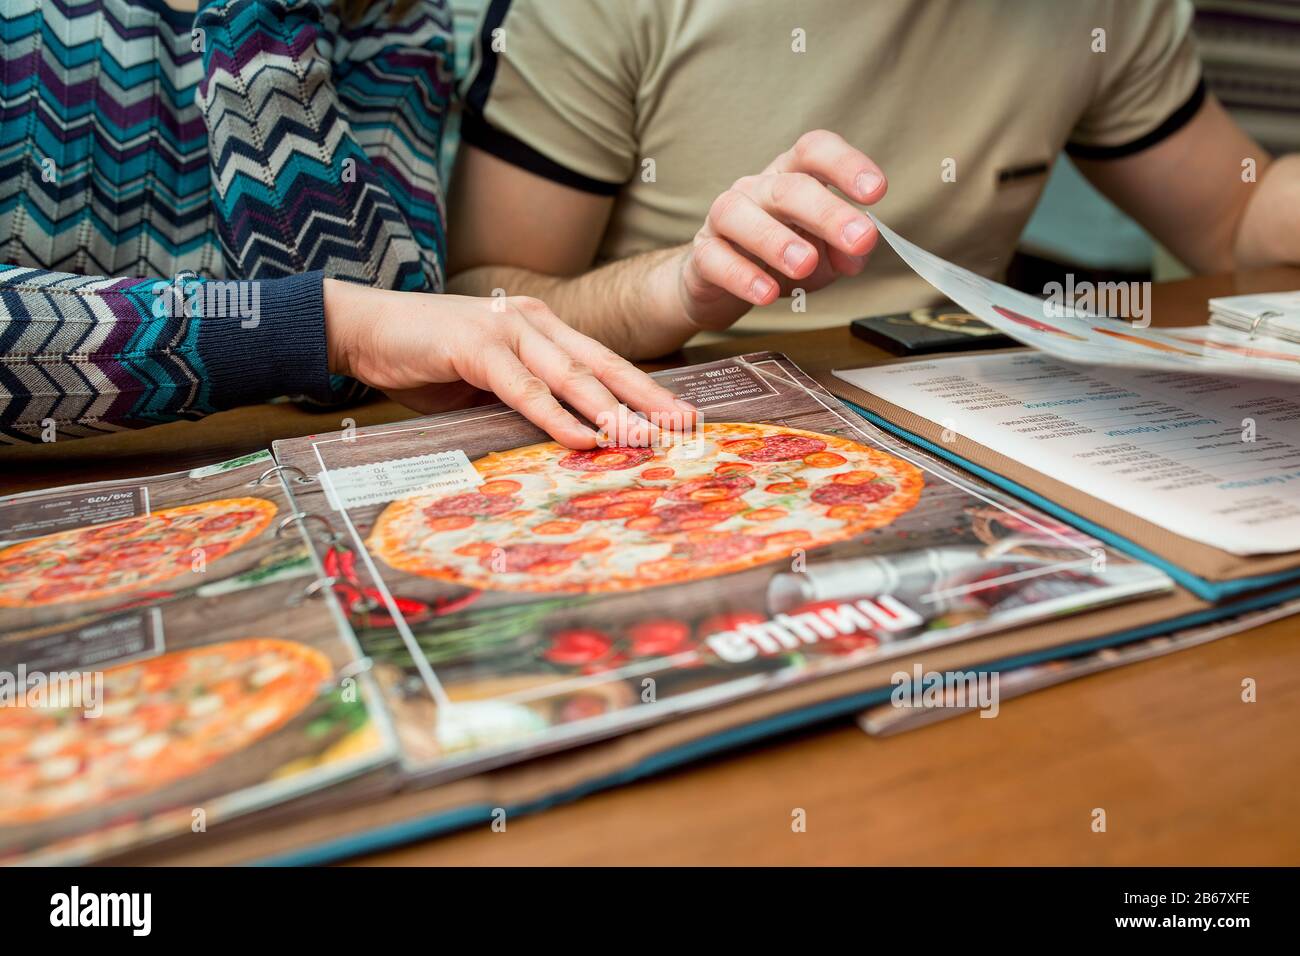 23. Februar 2017, UFA, RUSSLAND: Zwei Personen wählen im Restaurant "Eigenfirma" eine Pizza aus der Speisekarte Stockfoto